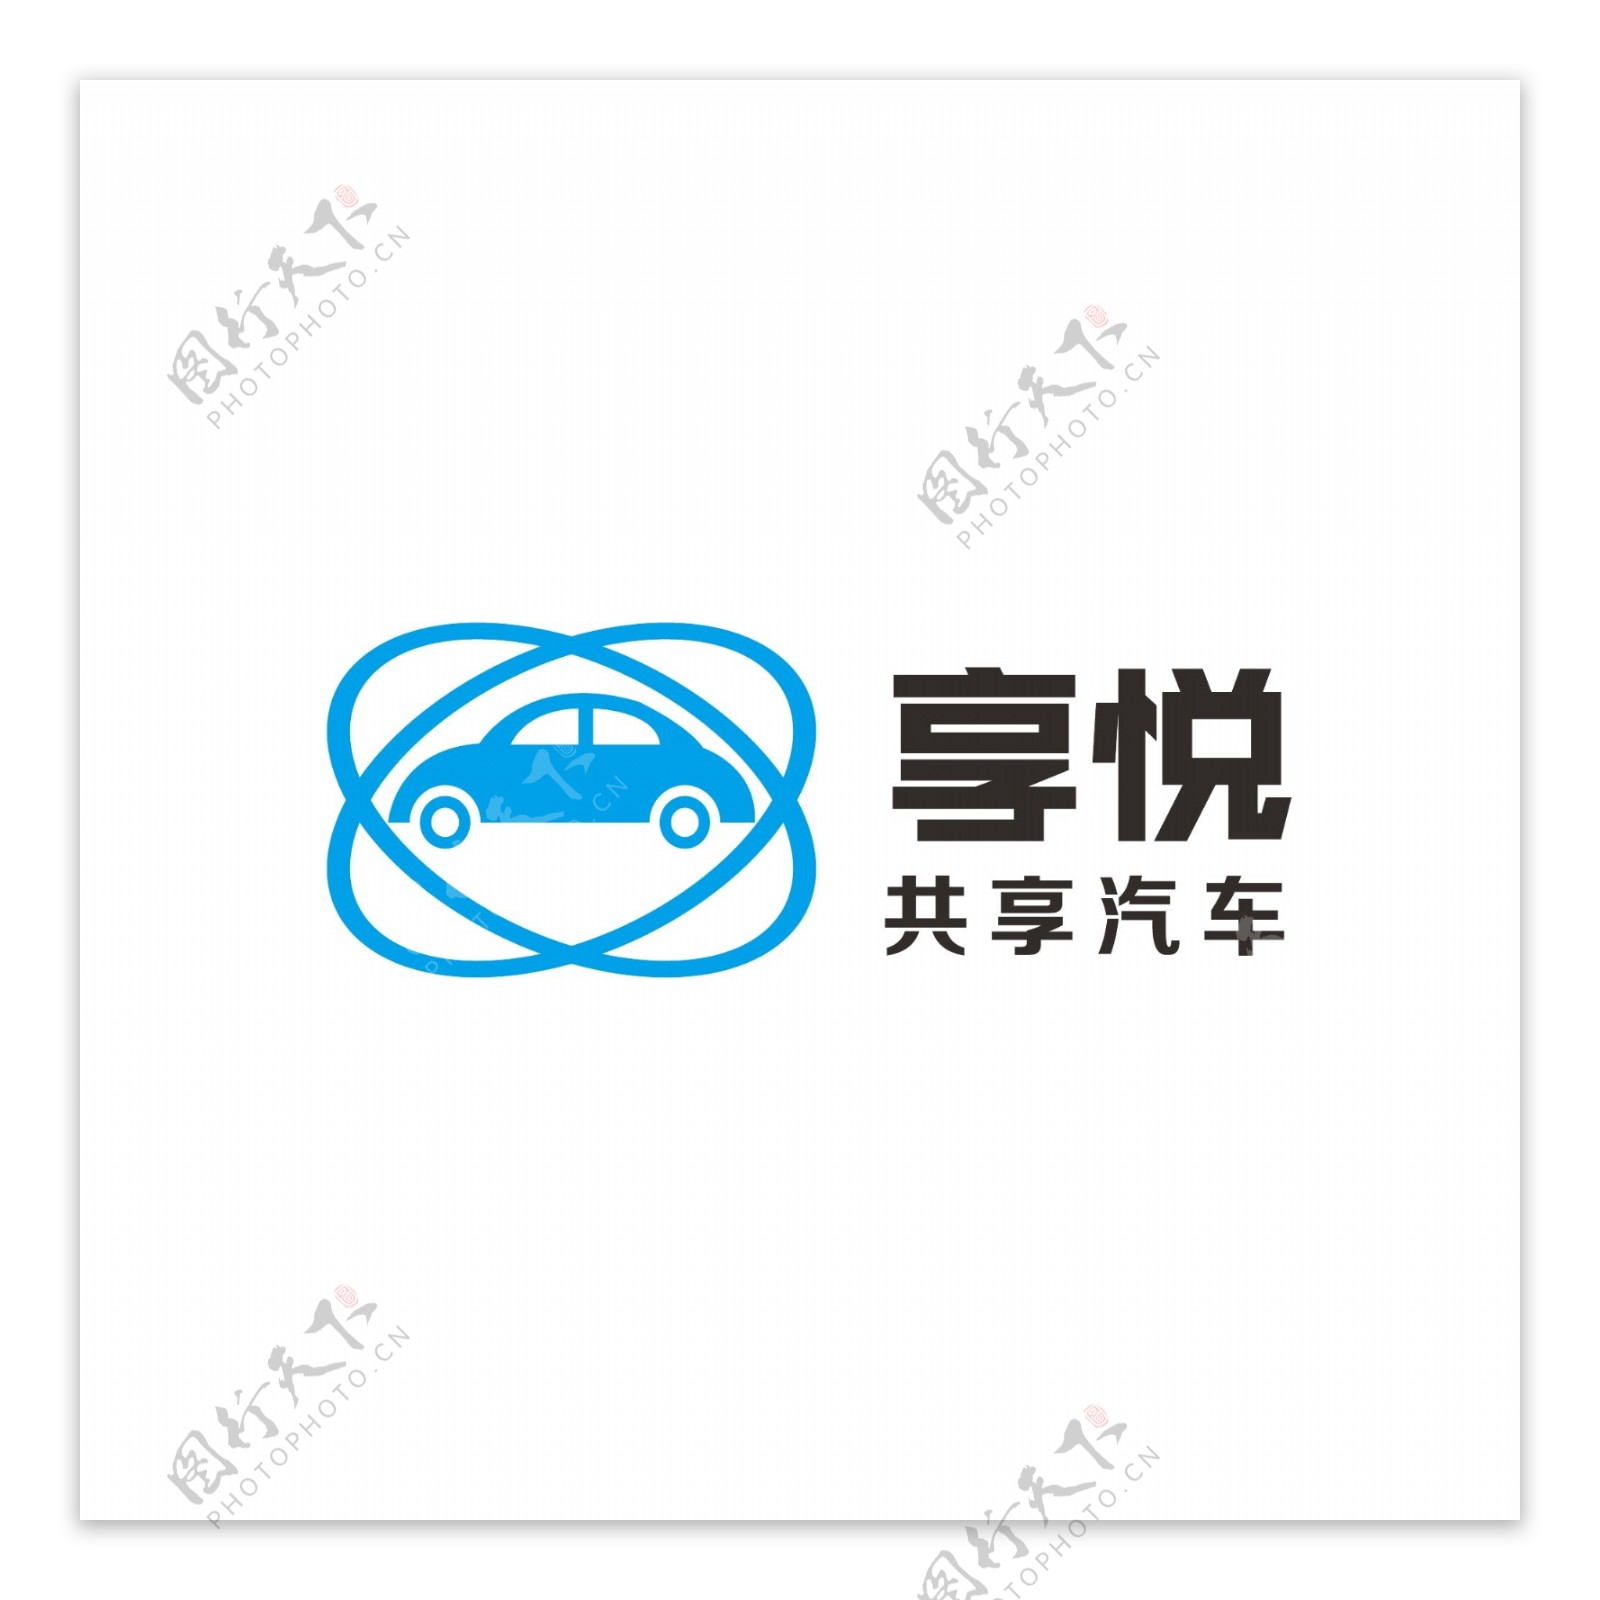 共享汽车商标logo